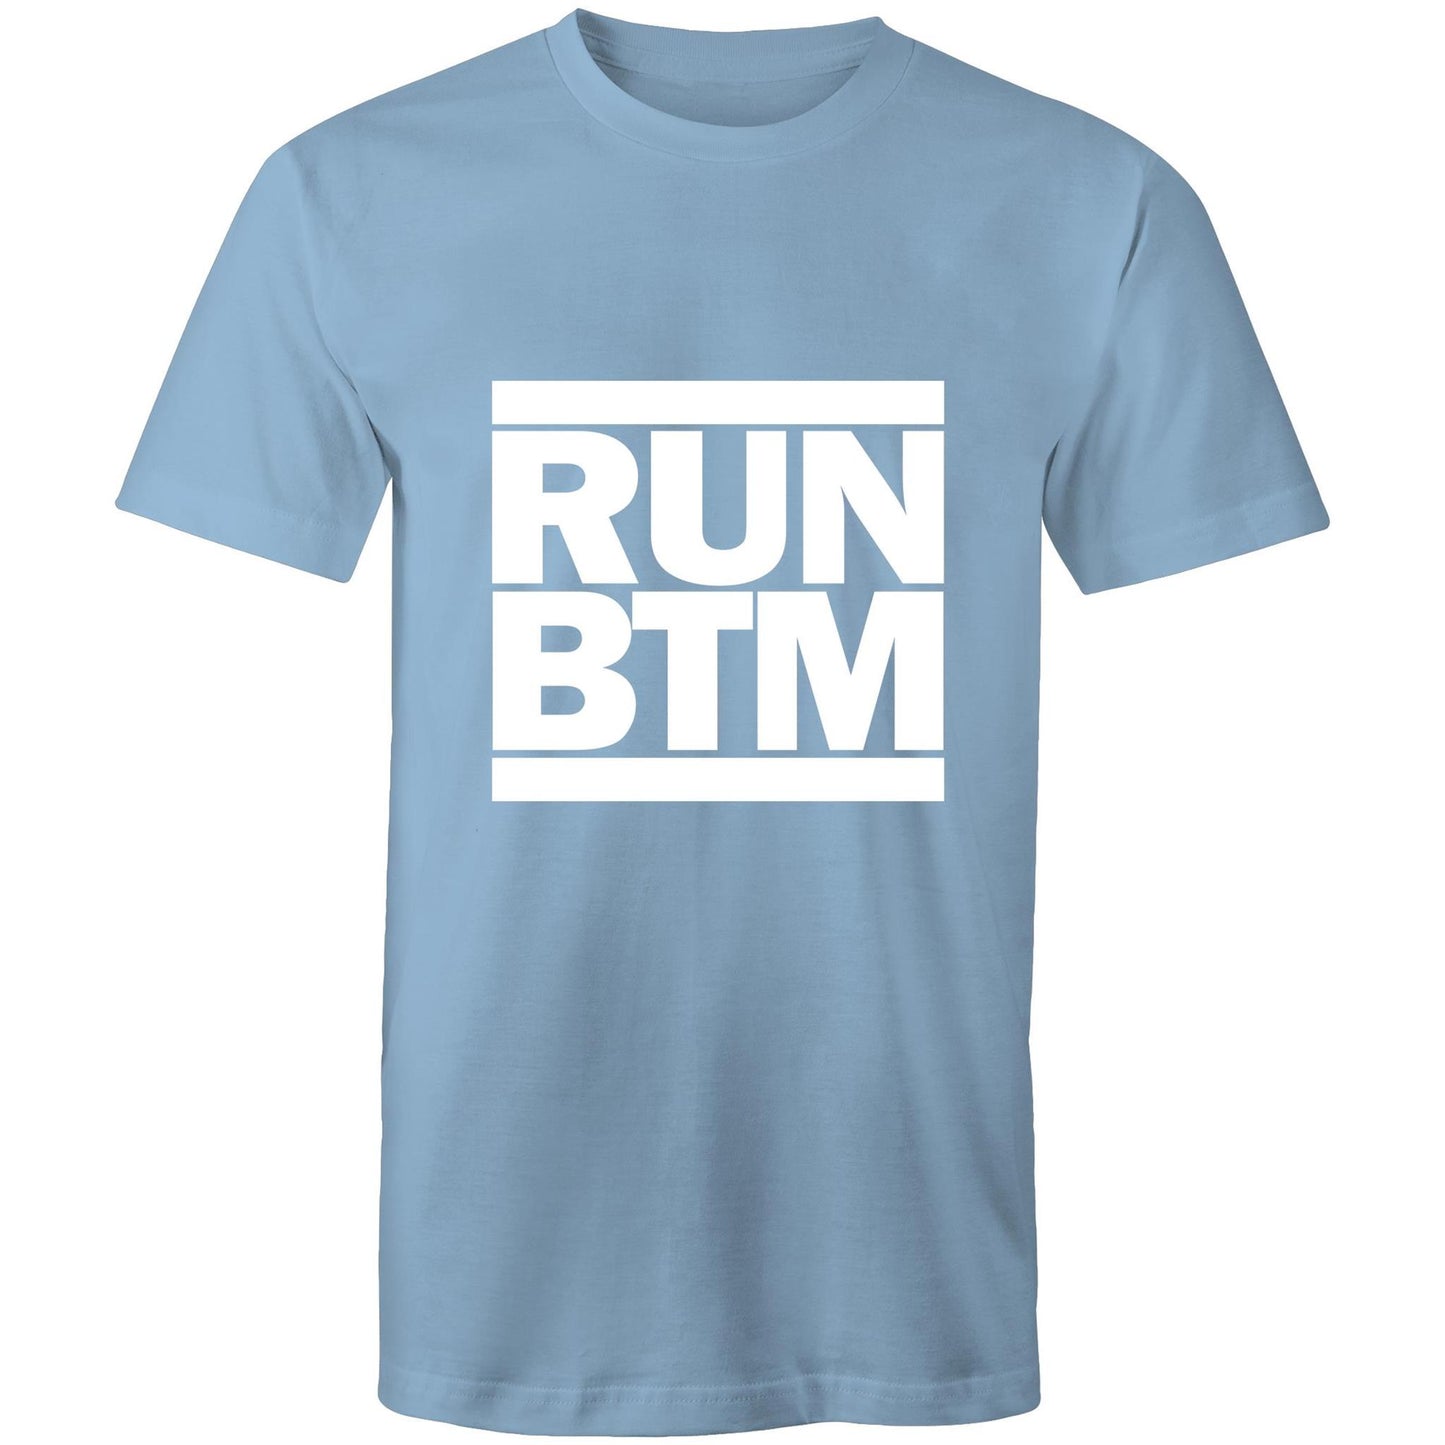 RUN BTM (All white) - AS Colour Staple - Mens T-Shirt